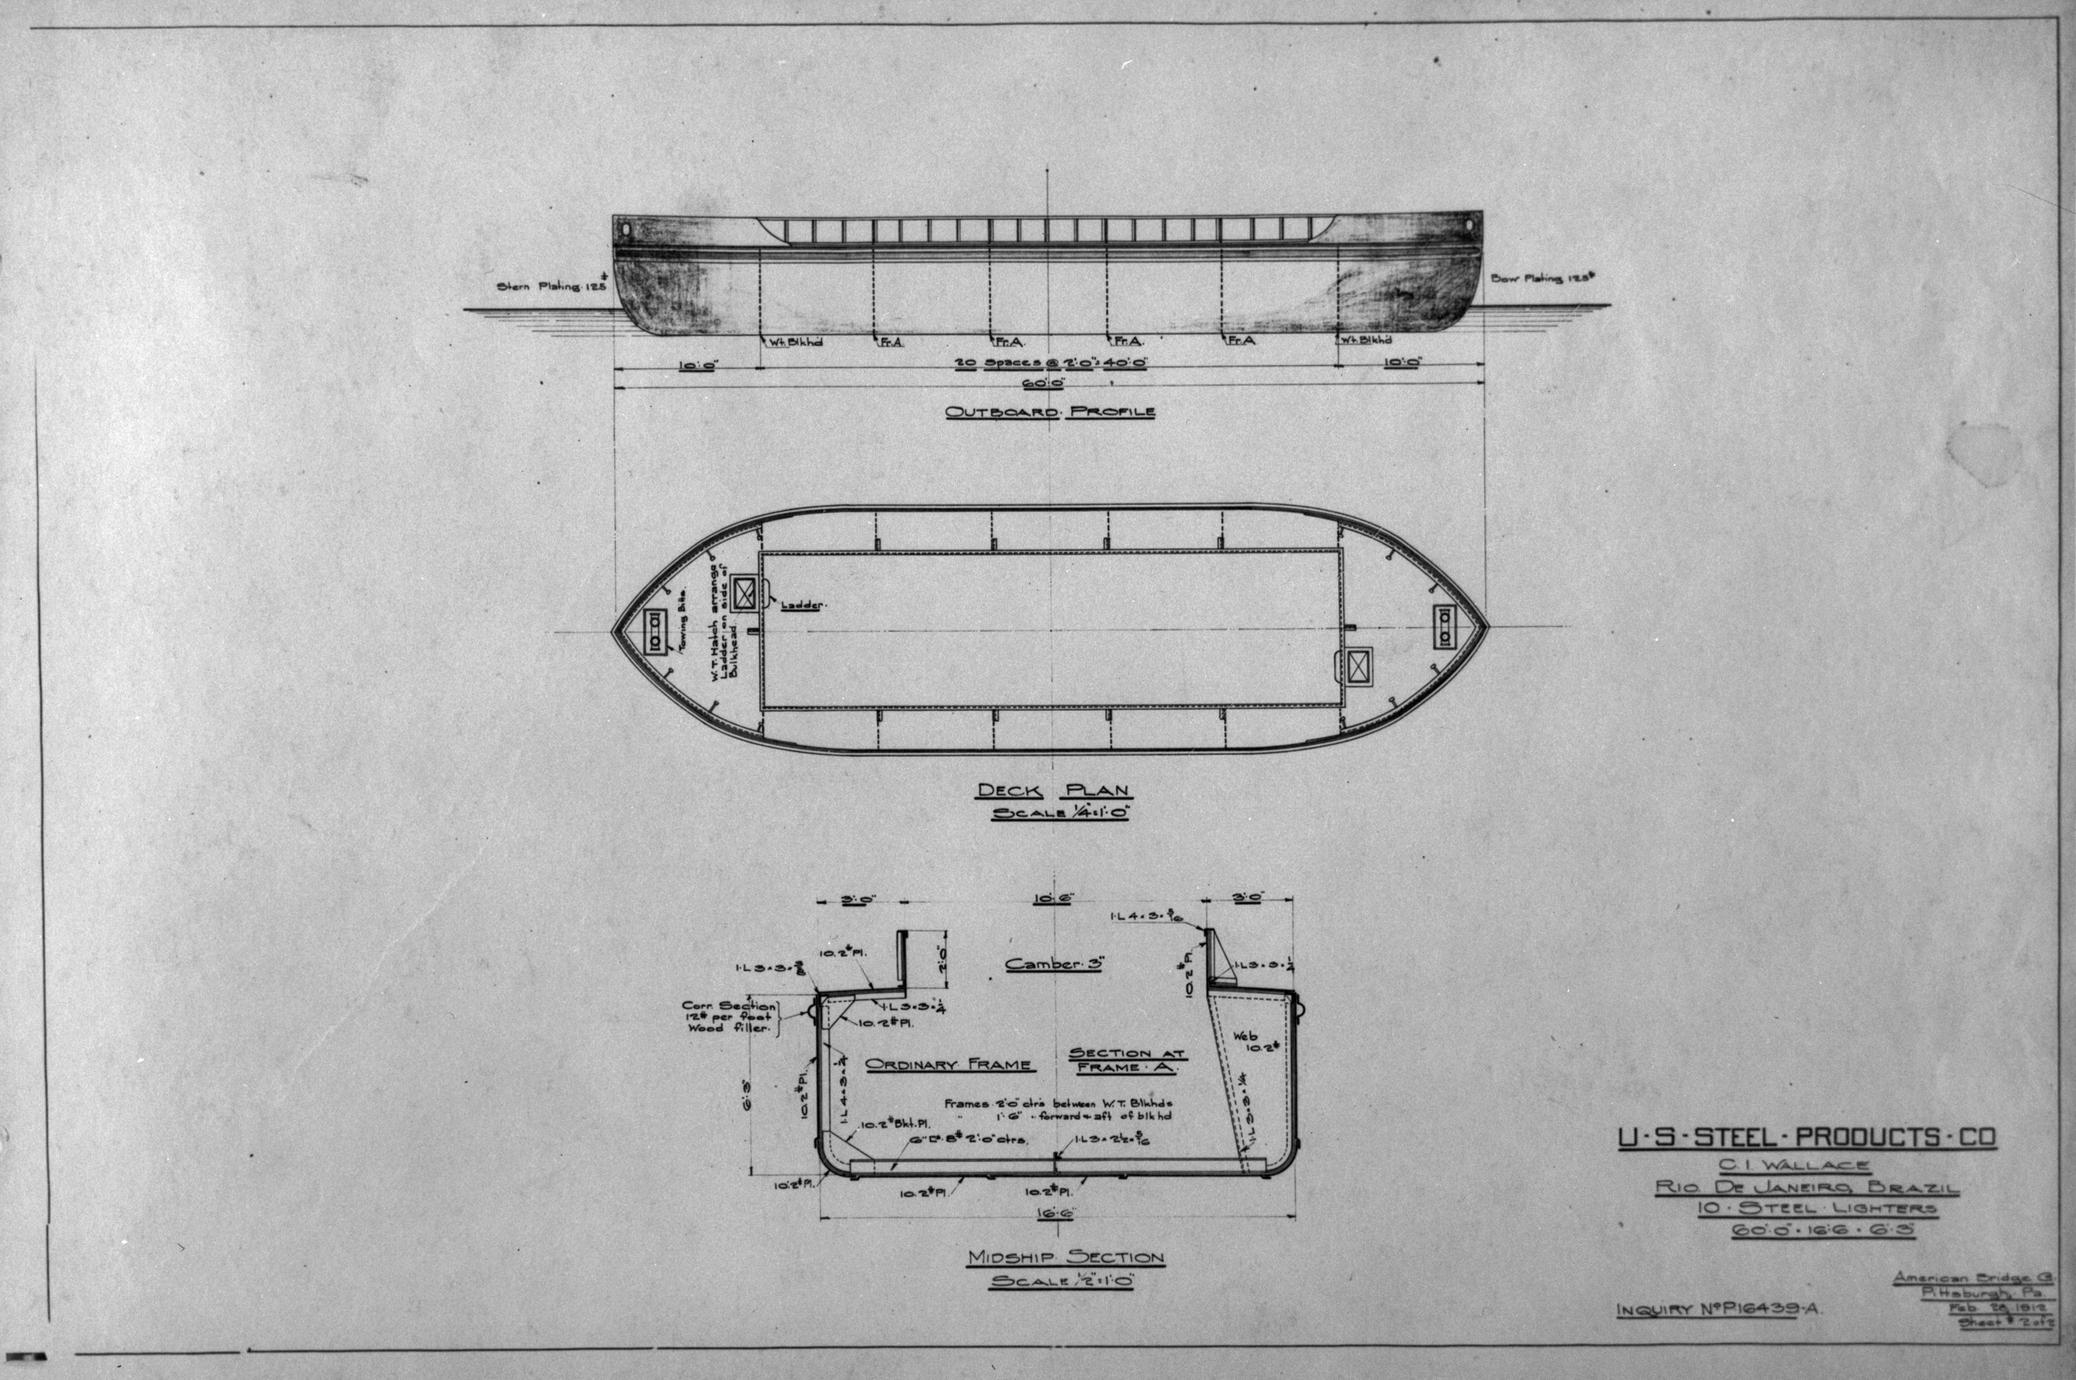 Barge Plans (steel lighter barge)